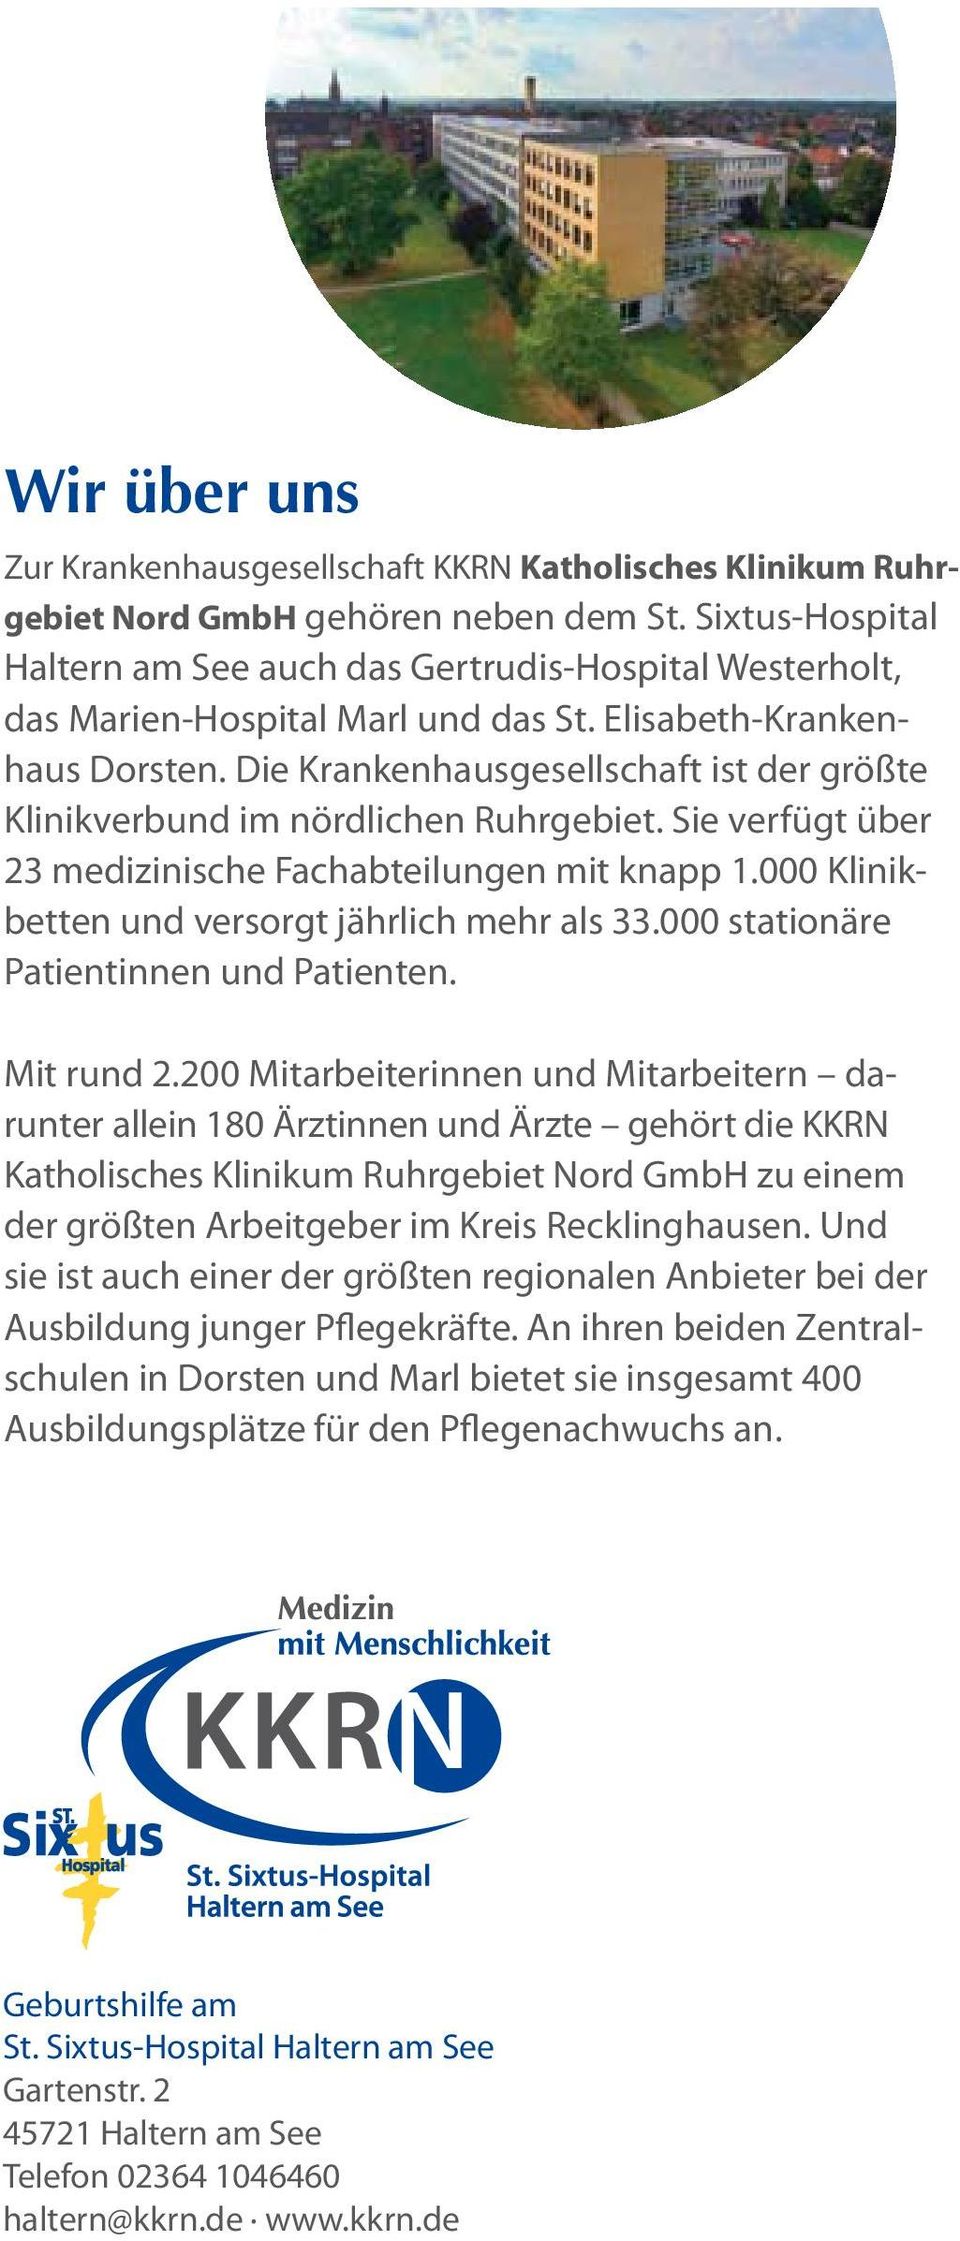 Die Krankenhausgesellschaft ist der größte Klinikverbund im nördlichen Ruhrgebiet. Sie verfügt über 23 medizinische Fachabteilungen mit knapp 1.000 Klinikbetten und versorgt jährlich mehr als 33.